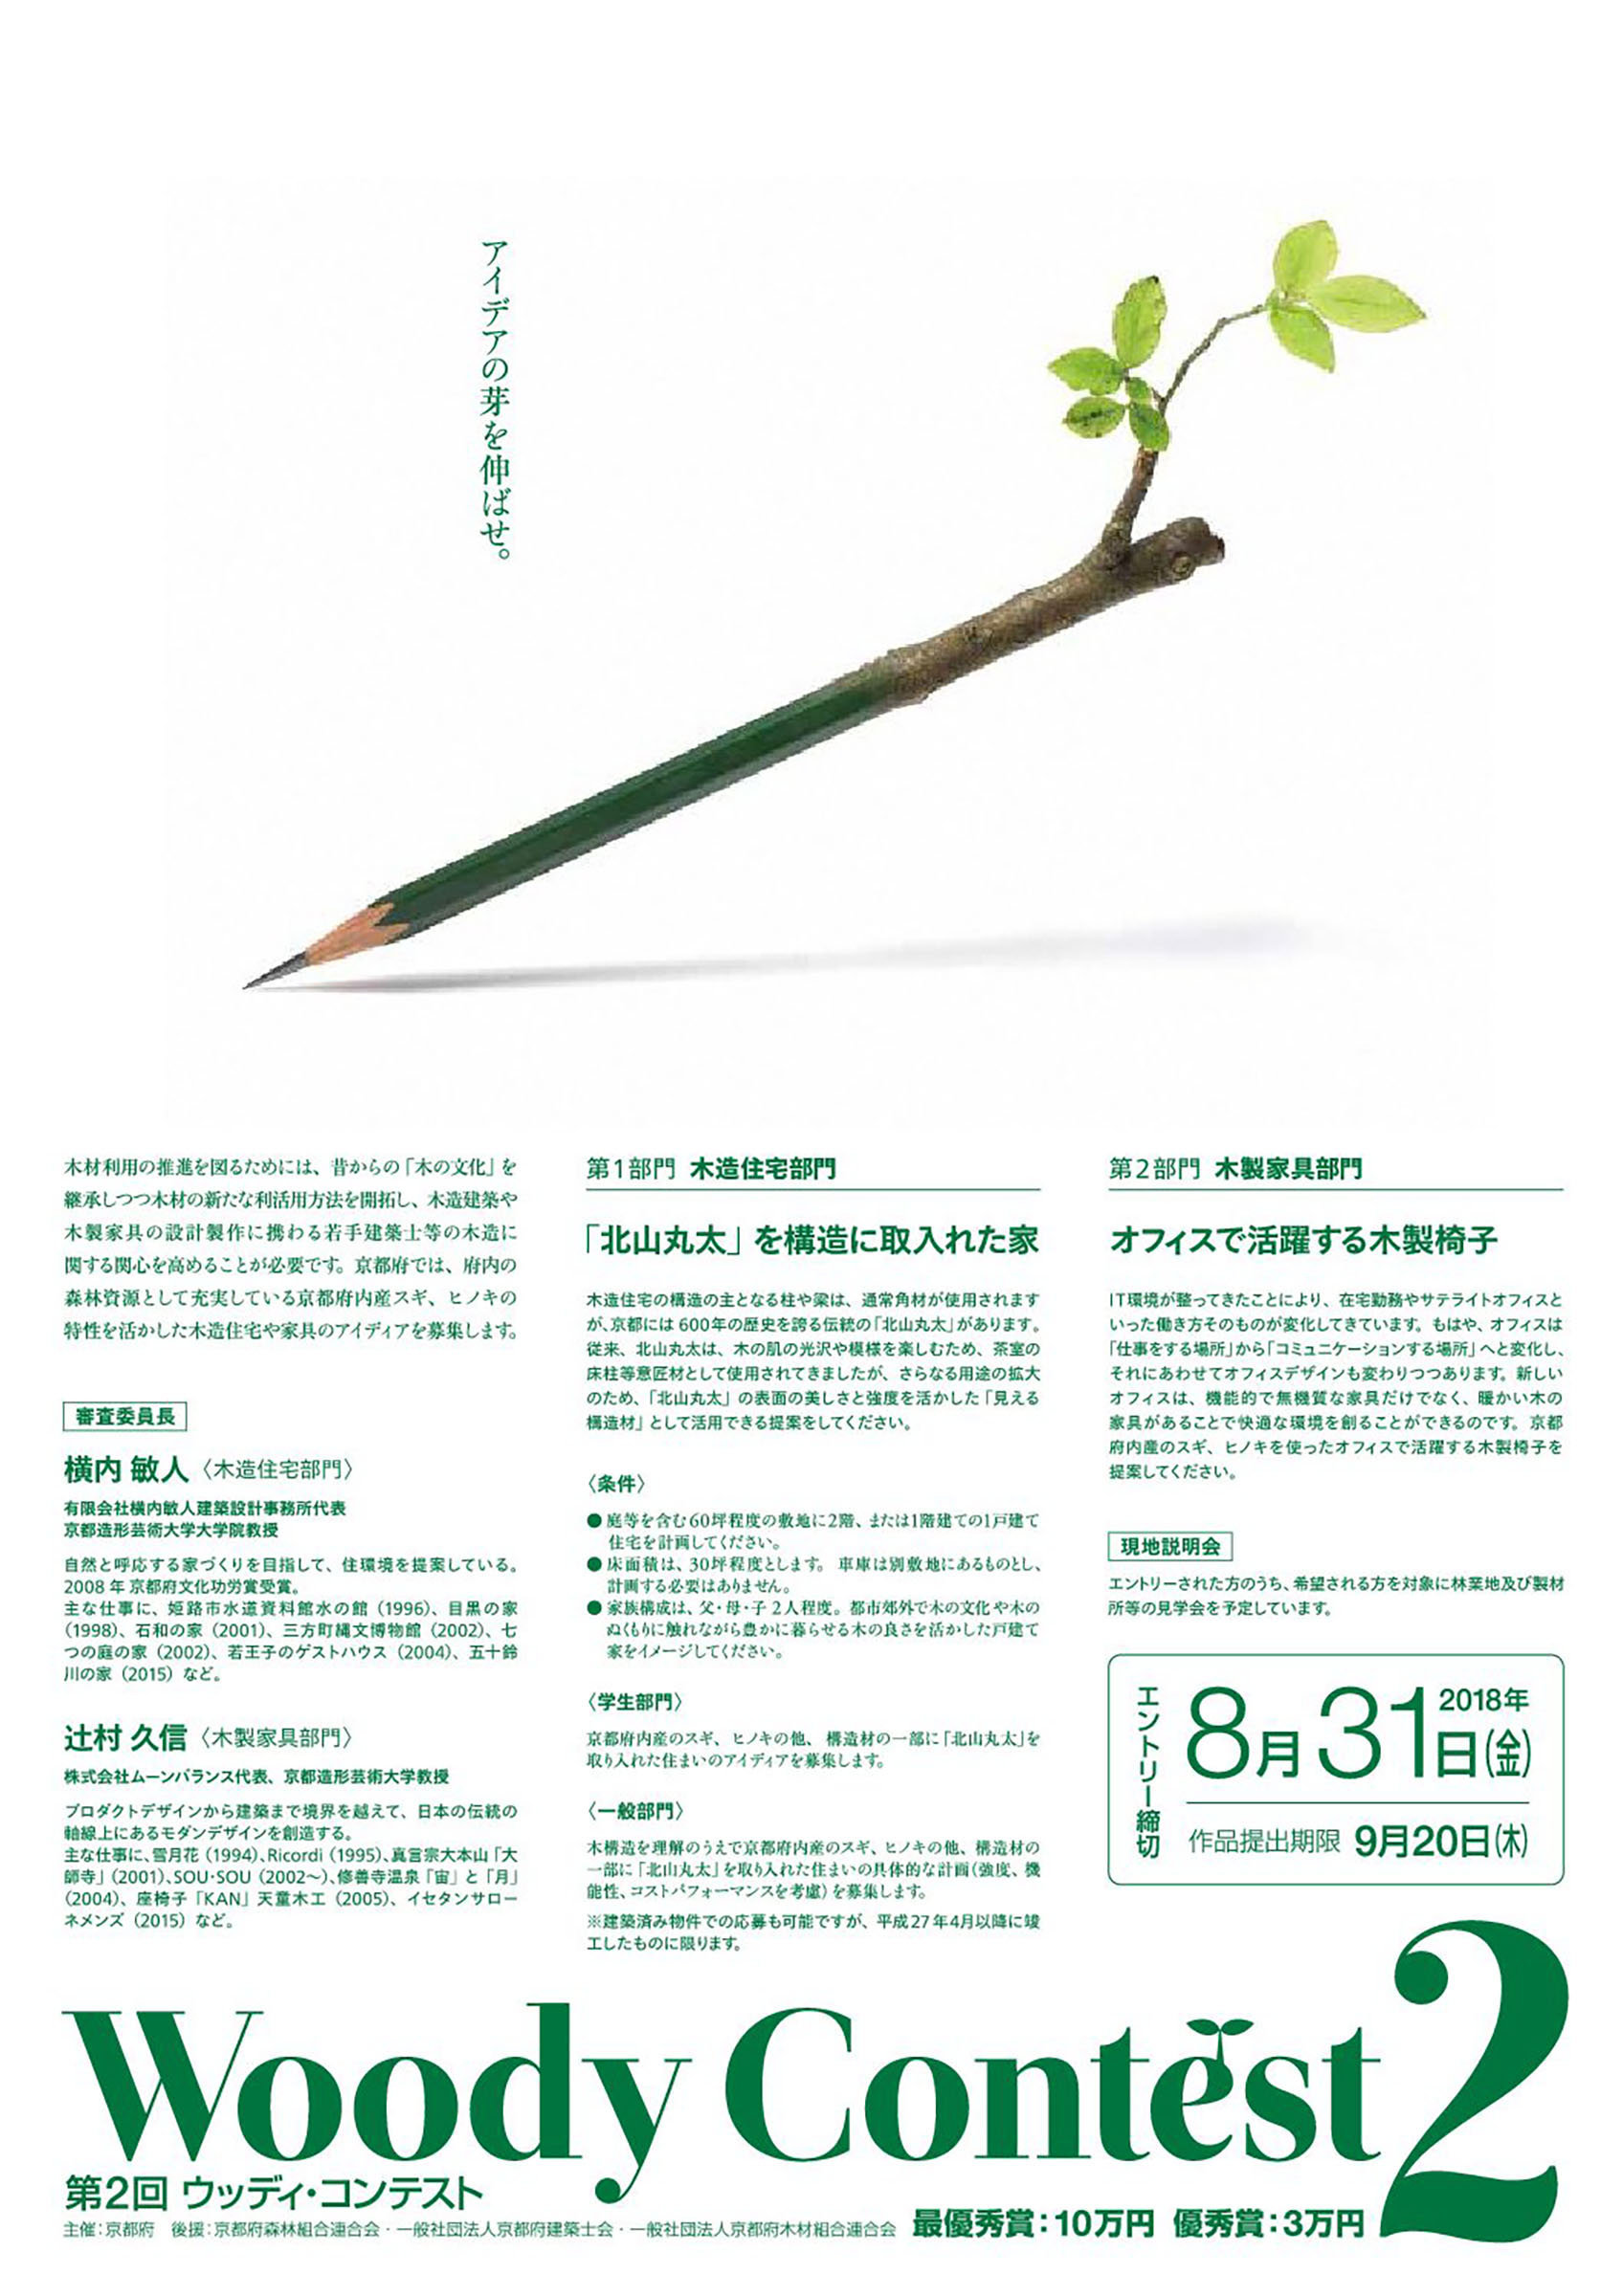 h30bosyutirashi-pdf.jpg